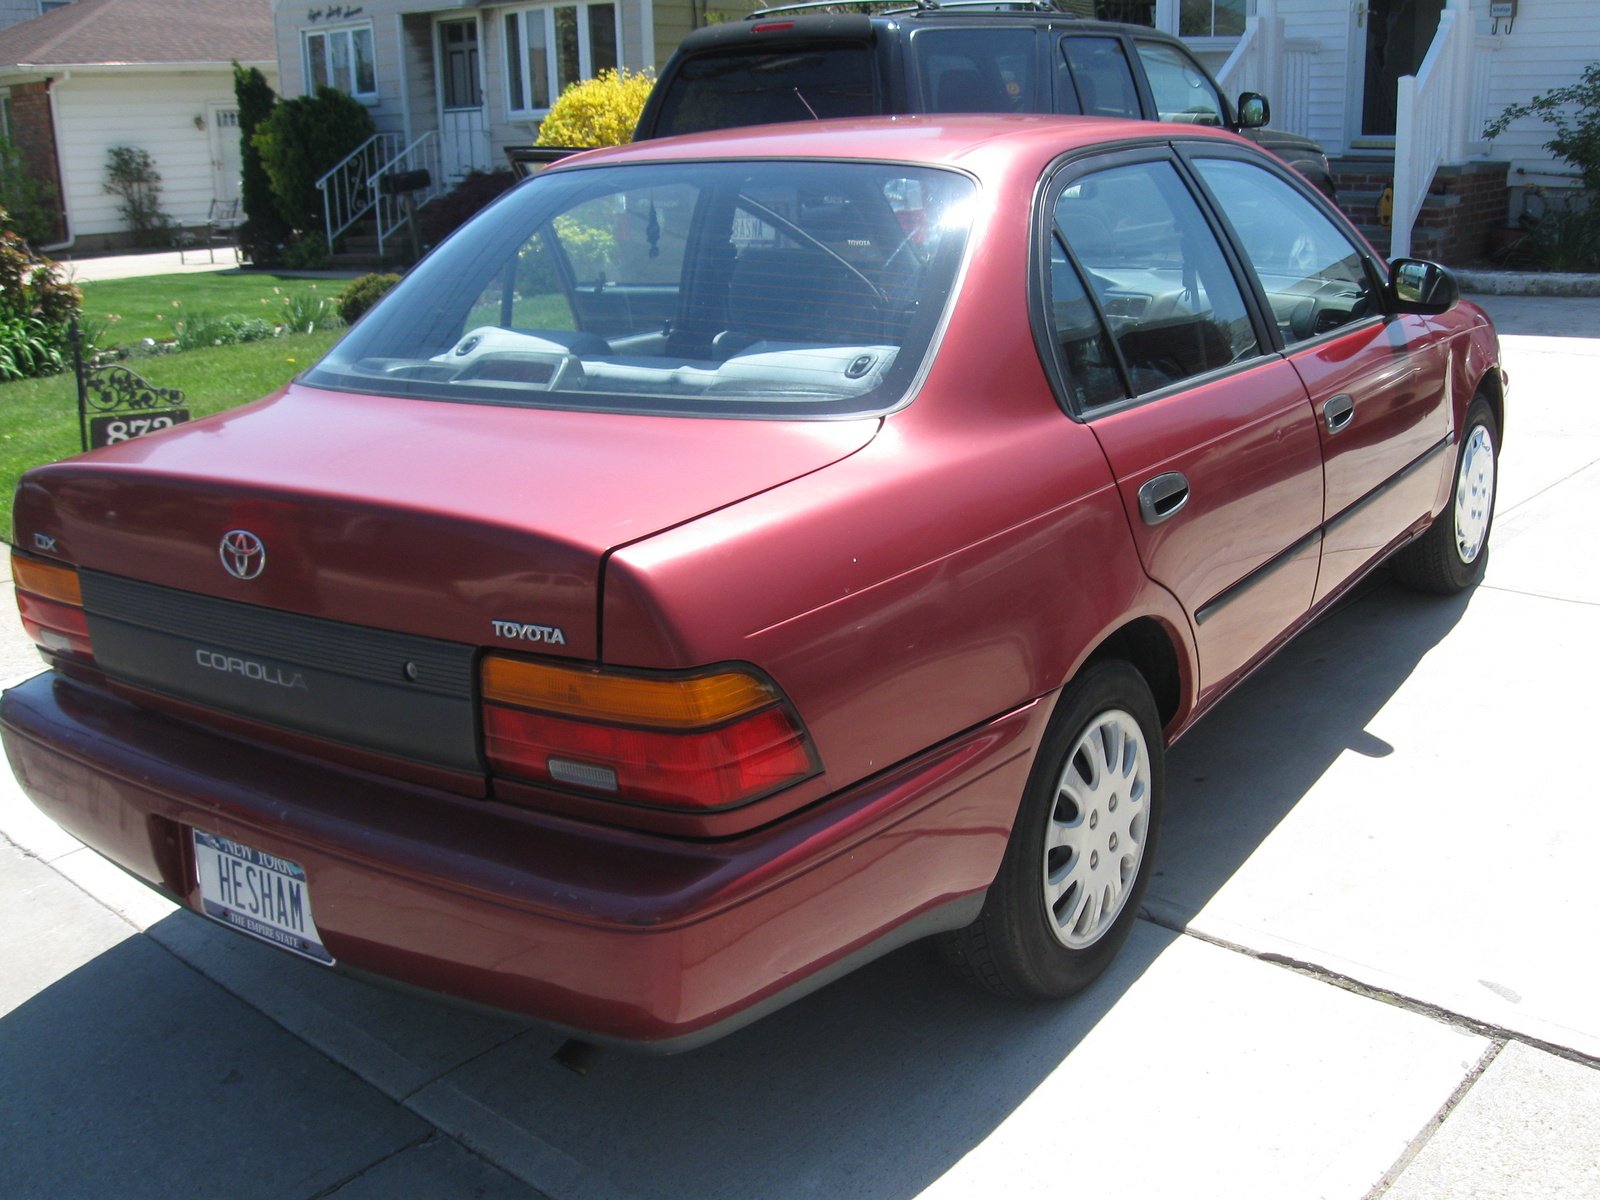 Купить тойоту 1995 года. Toyota,Toyota Corolla 1995. Тойота Королла 1995. Toyota Corolla DX 1995. Toyota Corolla 1995 DX sedan.